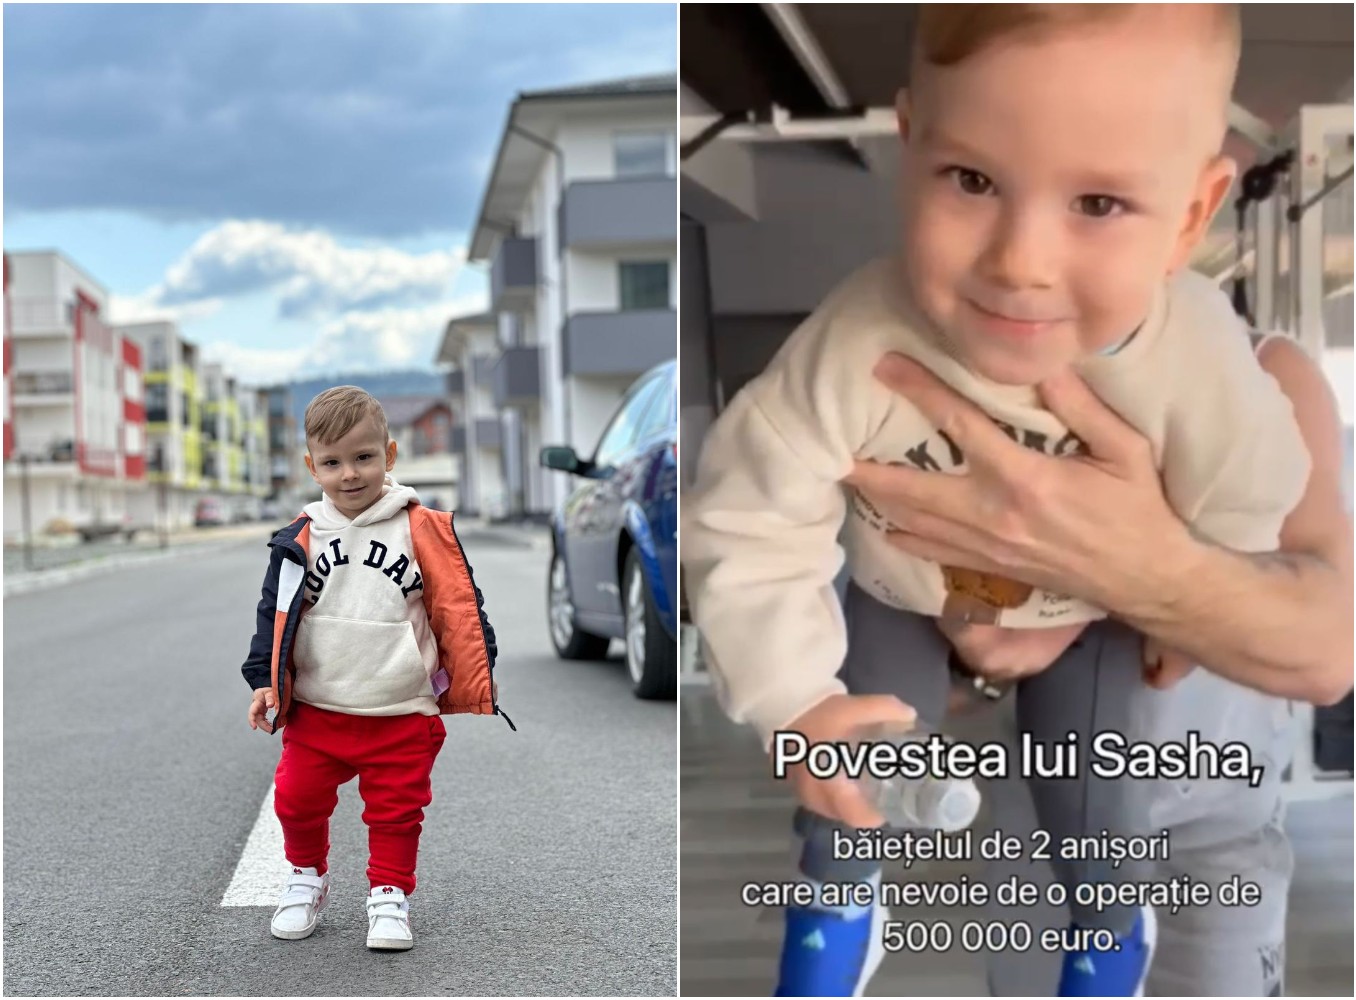 Sasha, un băiețel de numai 2 ani internat la spital în Cluj cu cancer, are nevoie de bani pentru o operație în Franța / Foto: mătușa lui Sasha